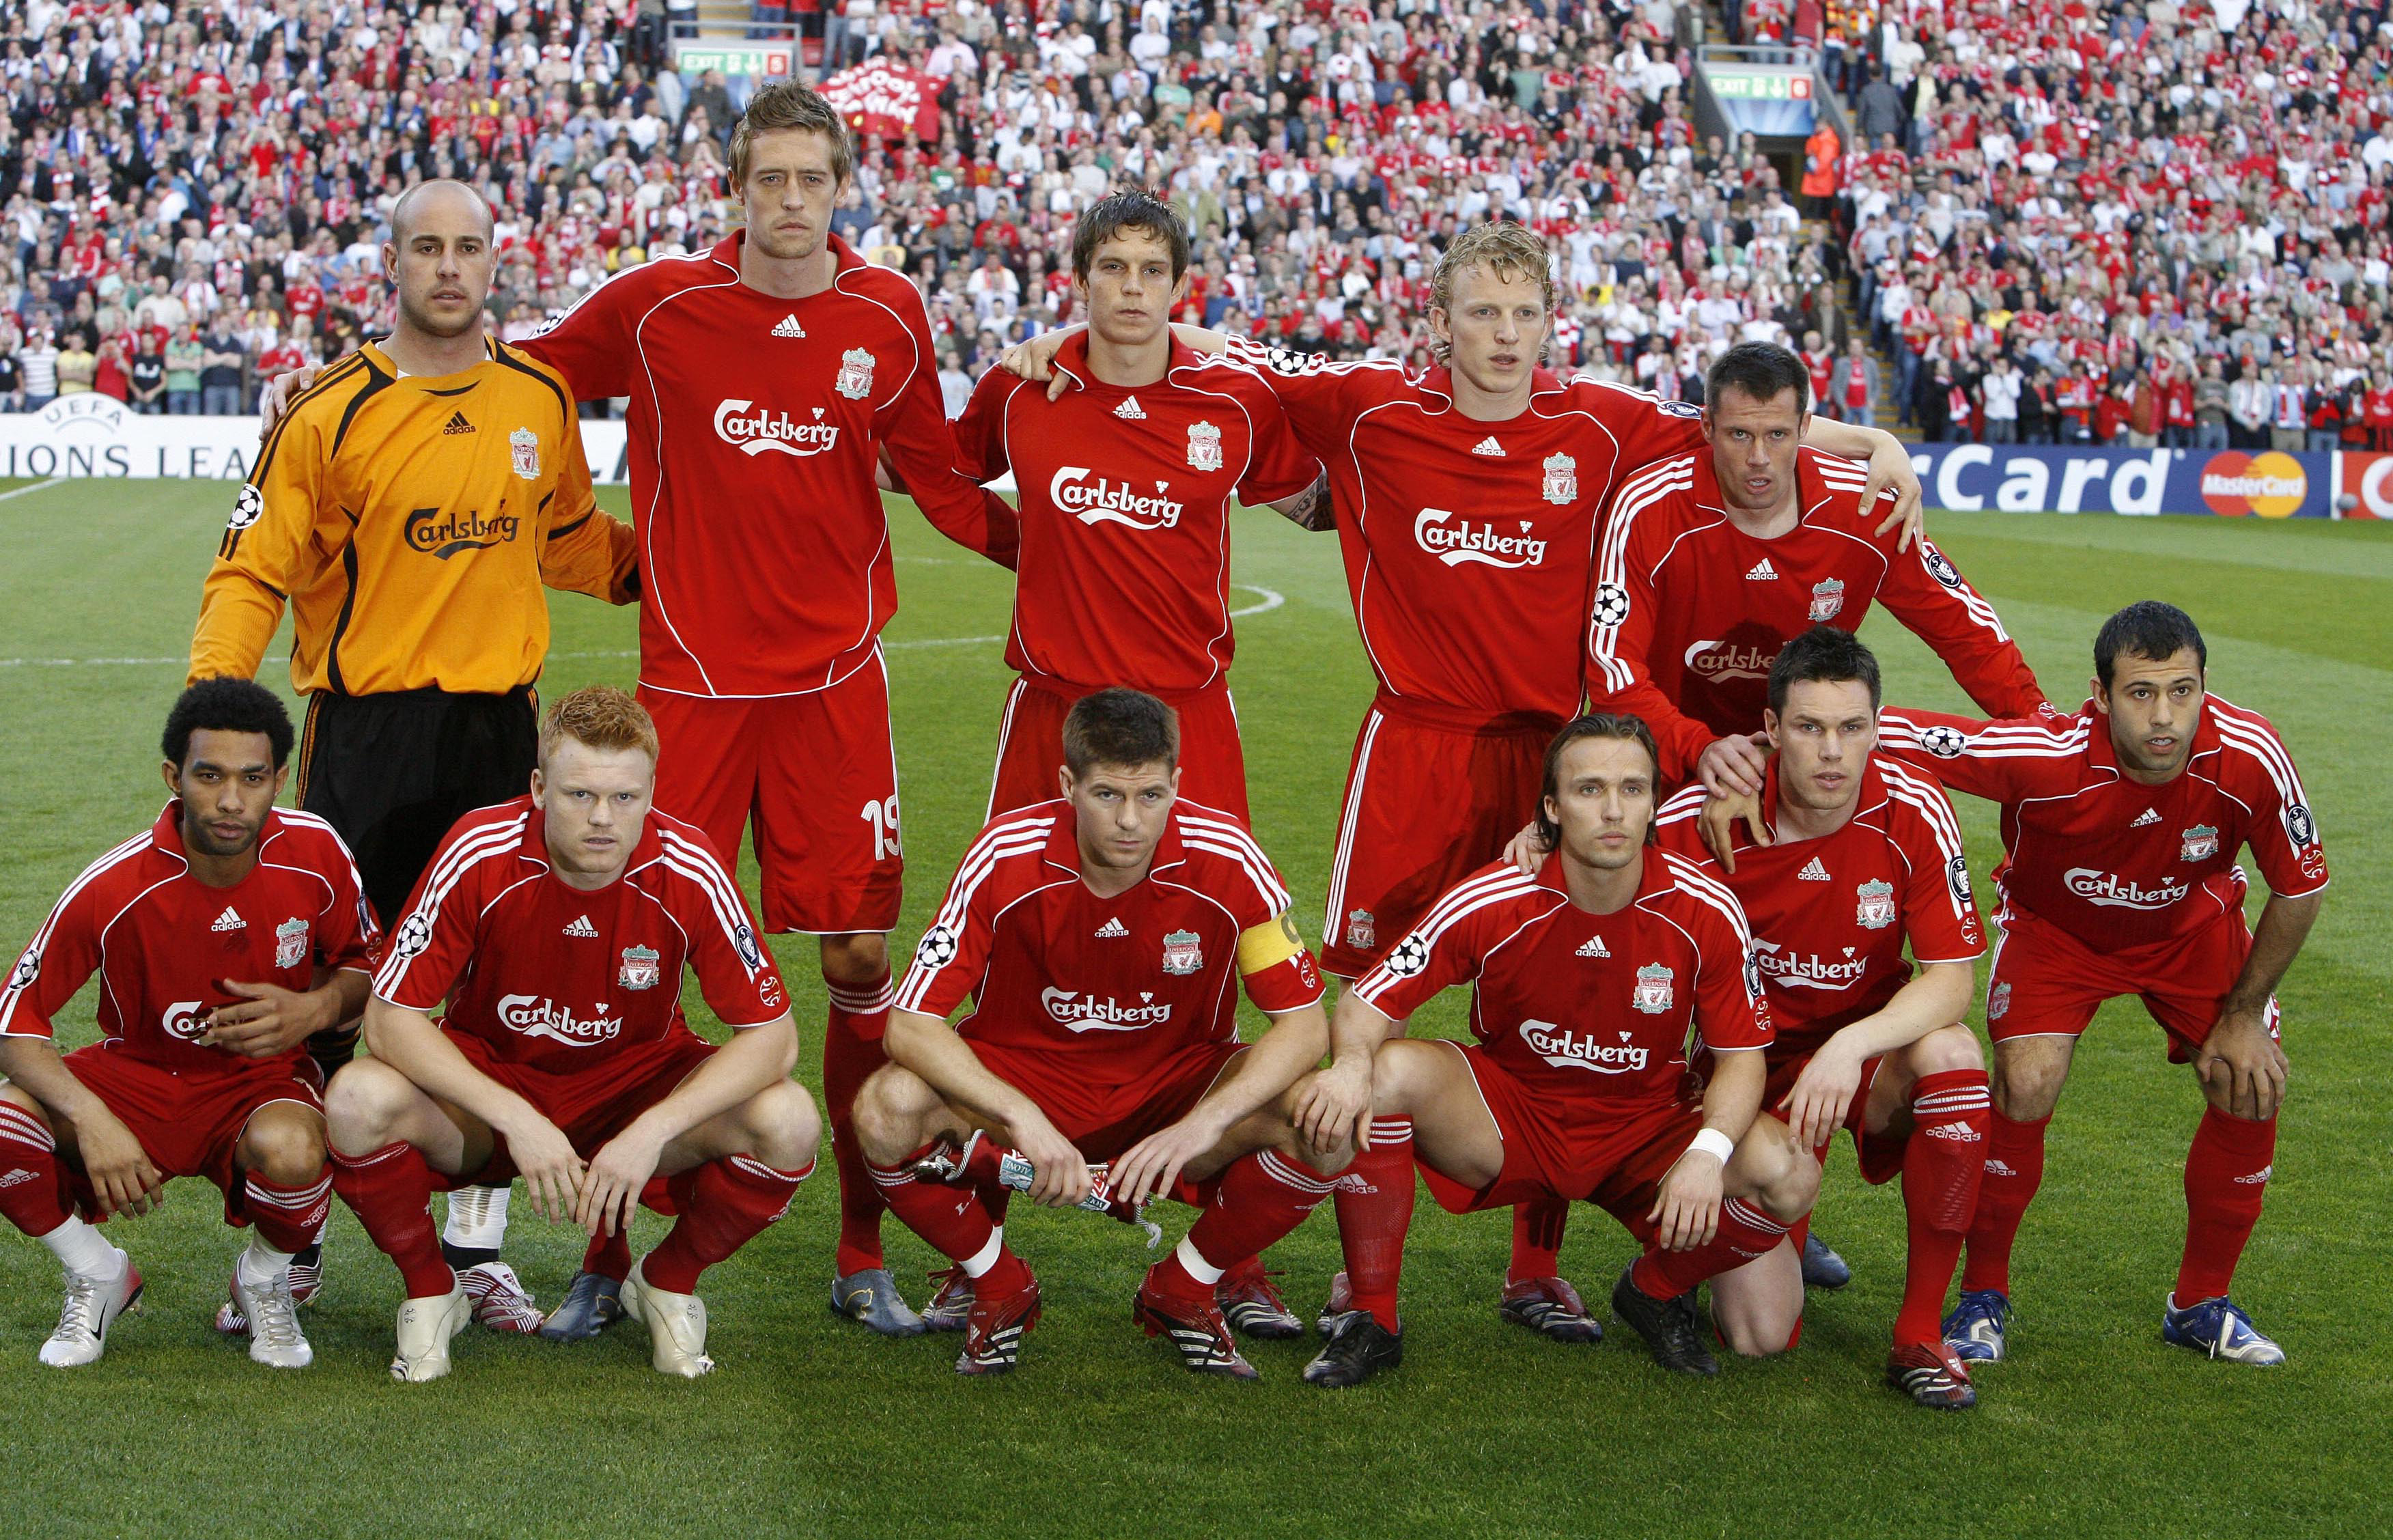 Die Liverpooler Teamkollegen Peter Crouch, Jamie Carragher und Steven Gerrard spielten während ihrer gesamten Karriere für England